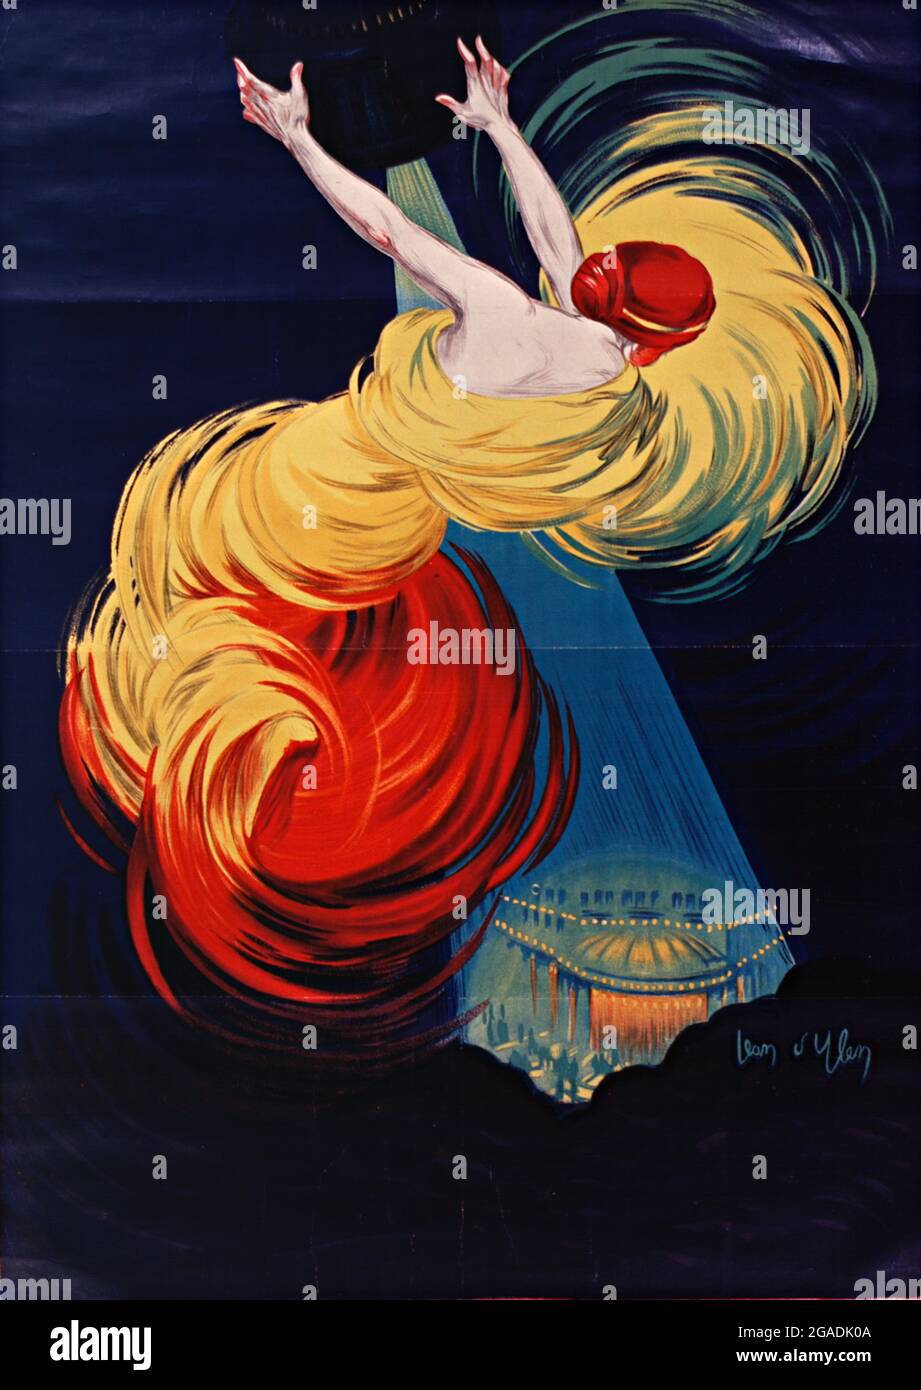 Illustrazione di Jean d'Ylen - Danse de Moscou - 1920 Foto Stock